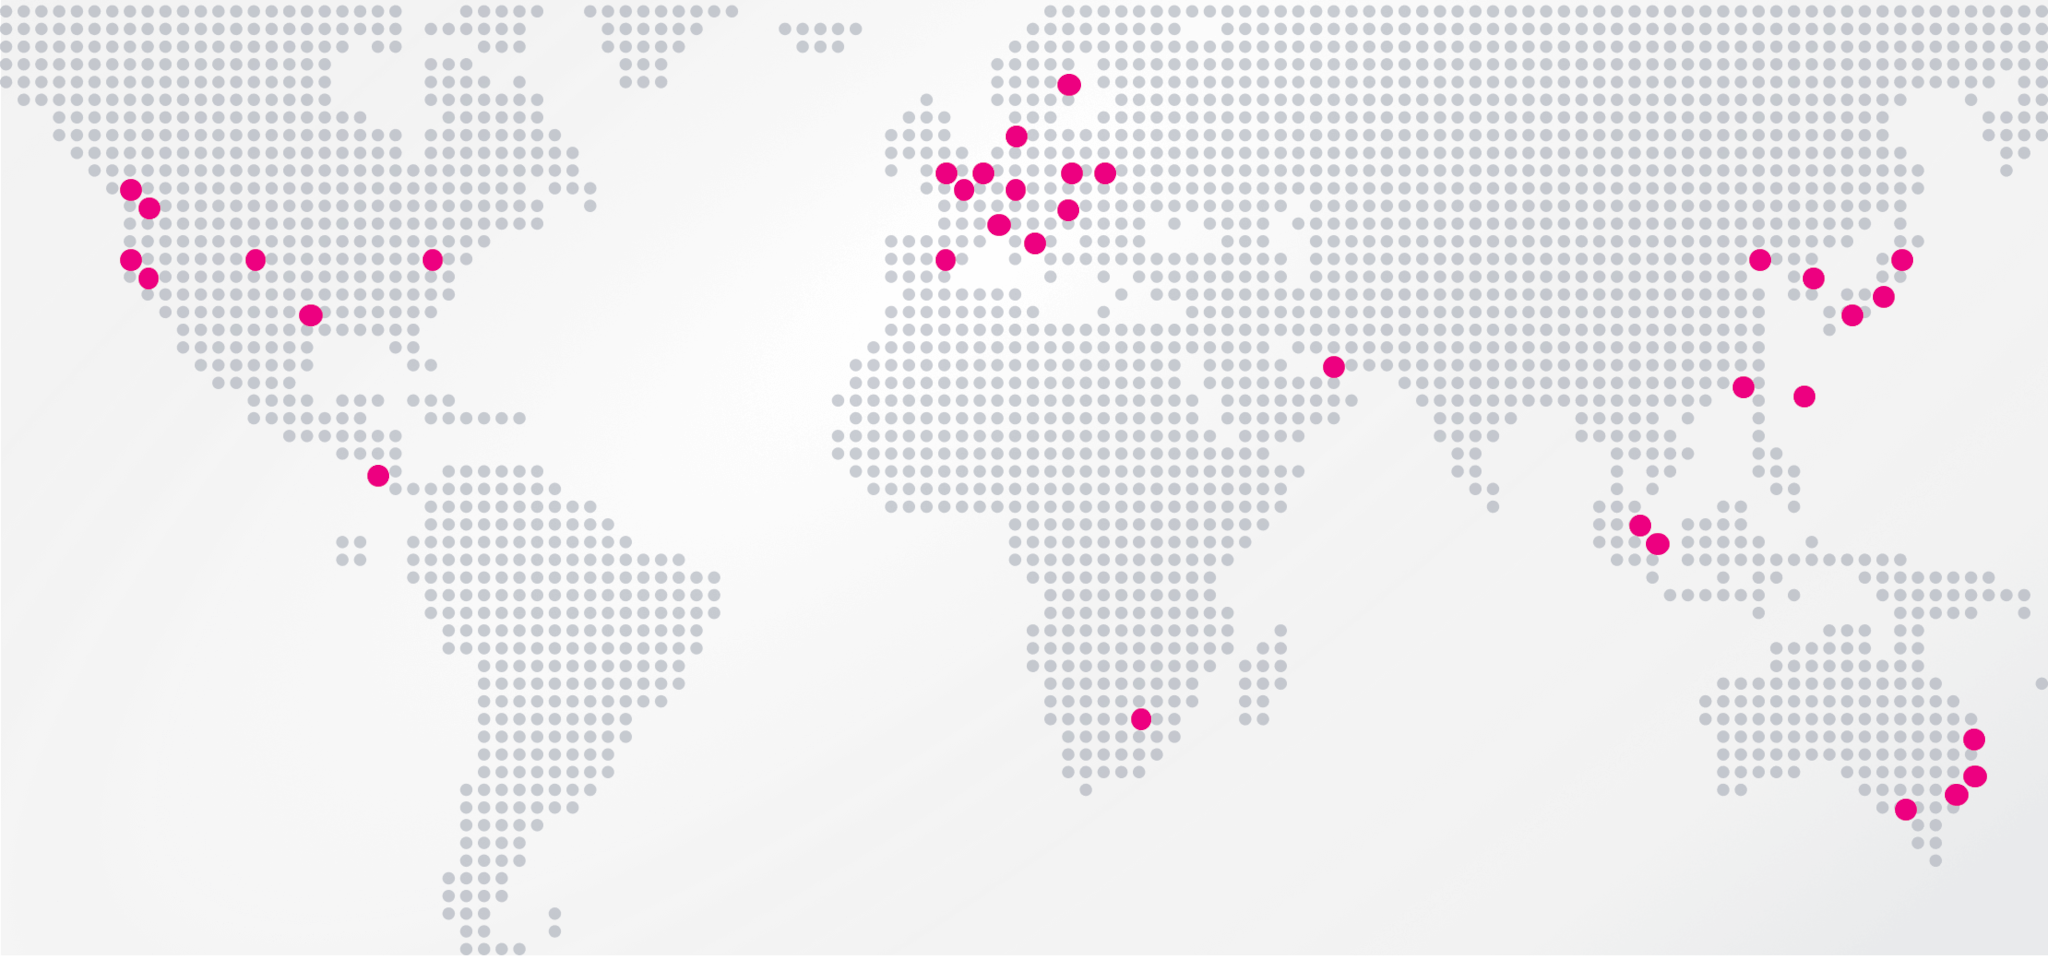 Eine Karte mit den Splunk-Niederlassungen auf der ganzen Welt. Über 30 globale Standorte in Nordamerika, Europa, dem Nahen Osten, Afrika, Asien und Australien sind mit roten Punkten markiert.